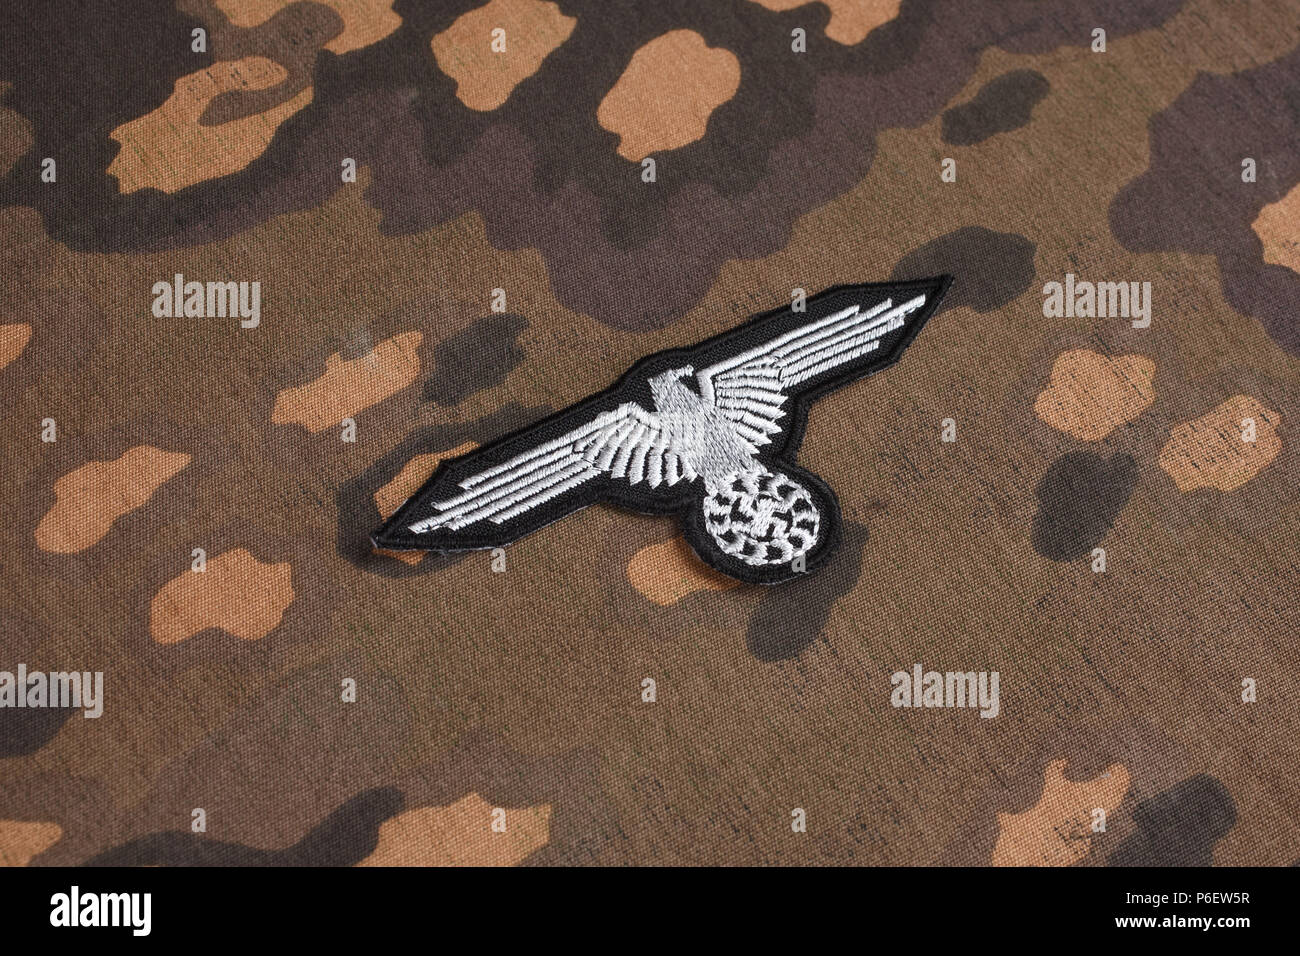 WW 2 Deutsche Waffen-SS militärische Abzeichen auf SS Camouflage einheitlichen Hintergrund Stockfoto